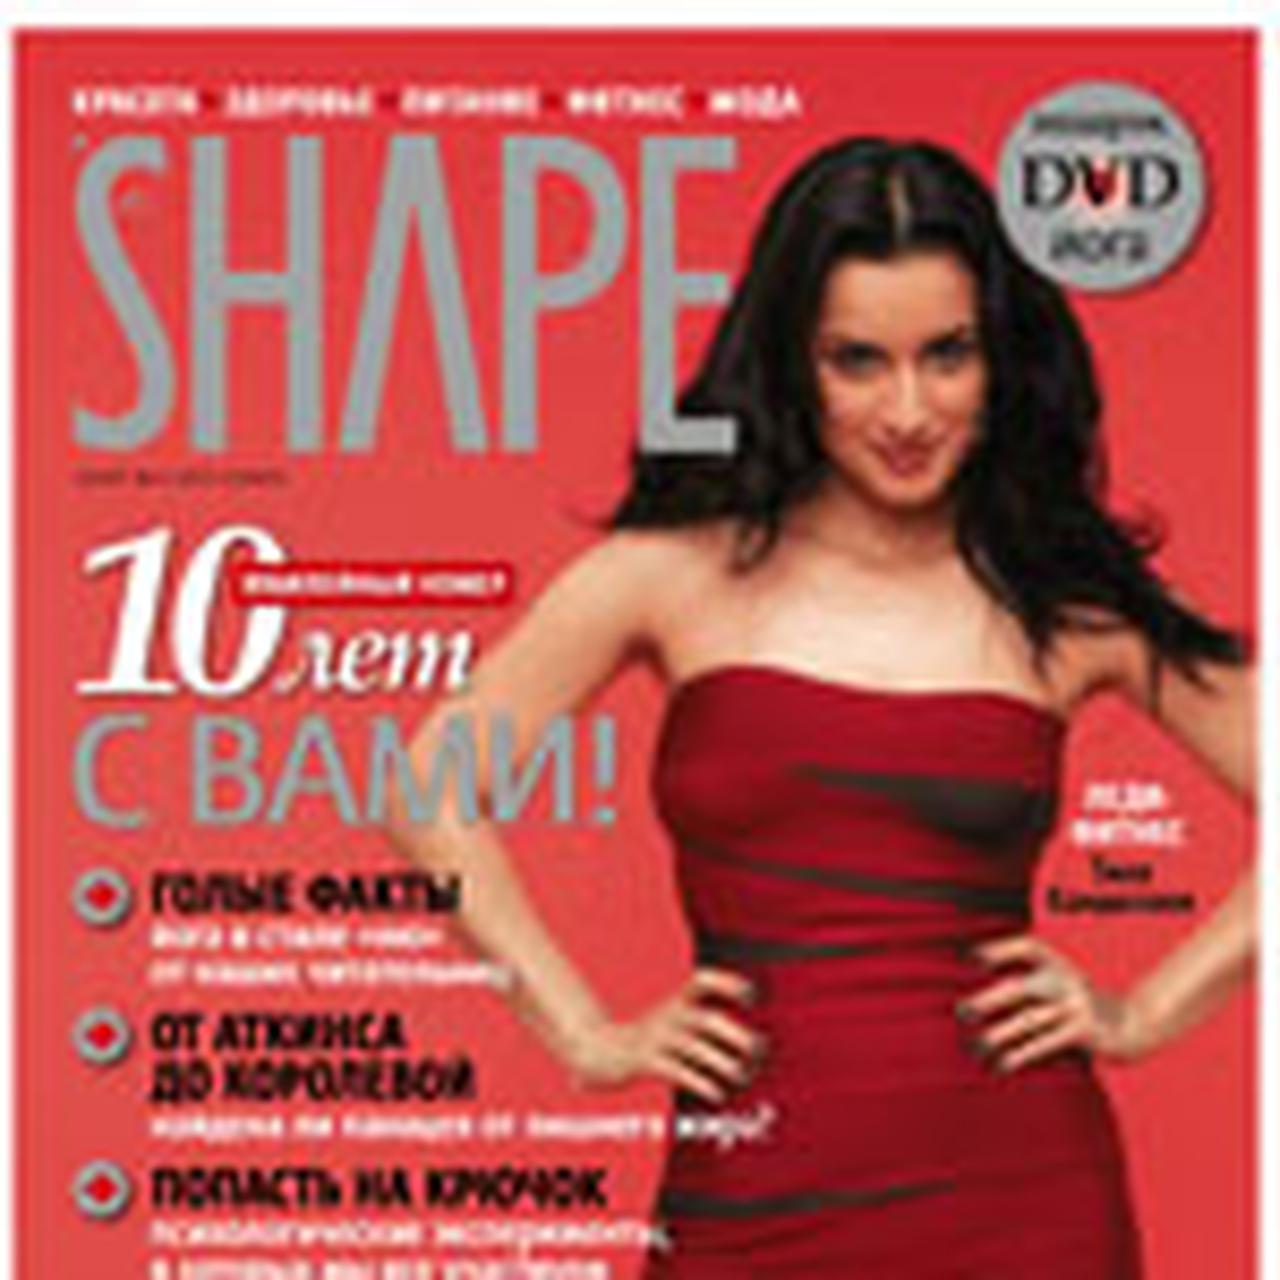 Журнал SHAPE в ноябре - Страсти